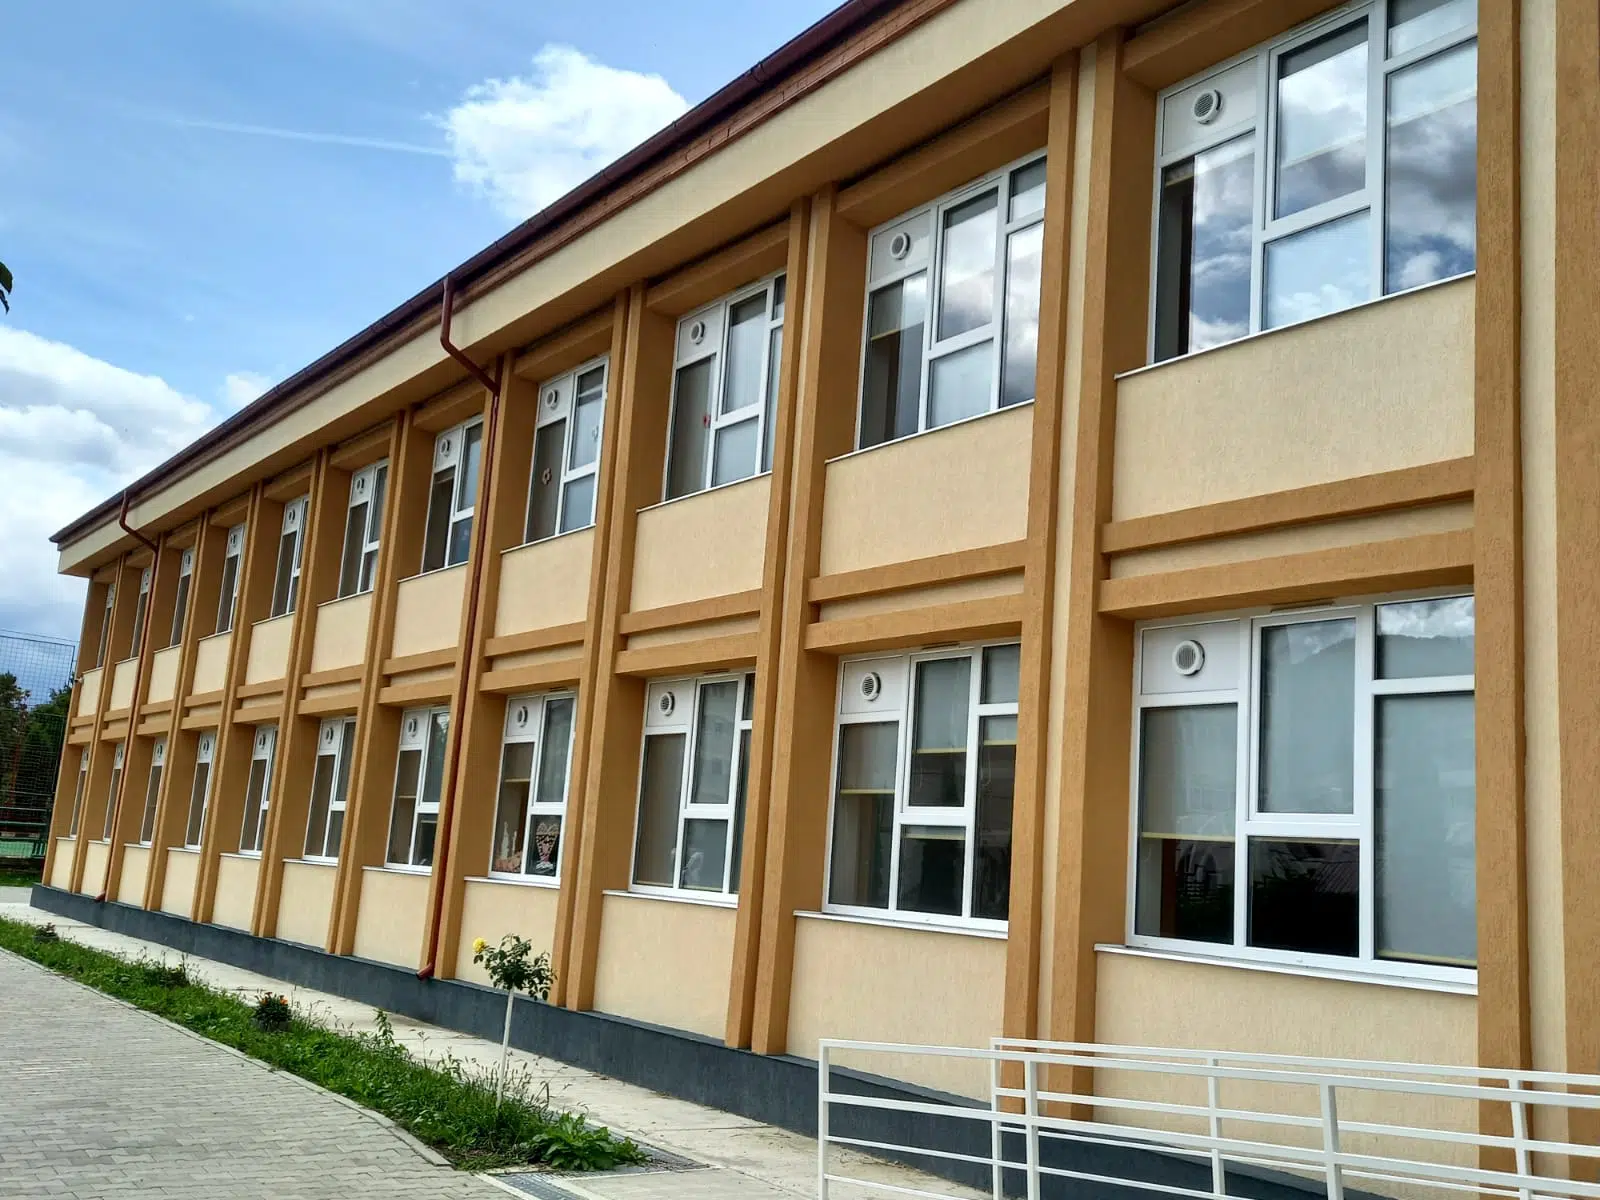 Școala Generală "George Enescu"